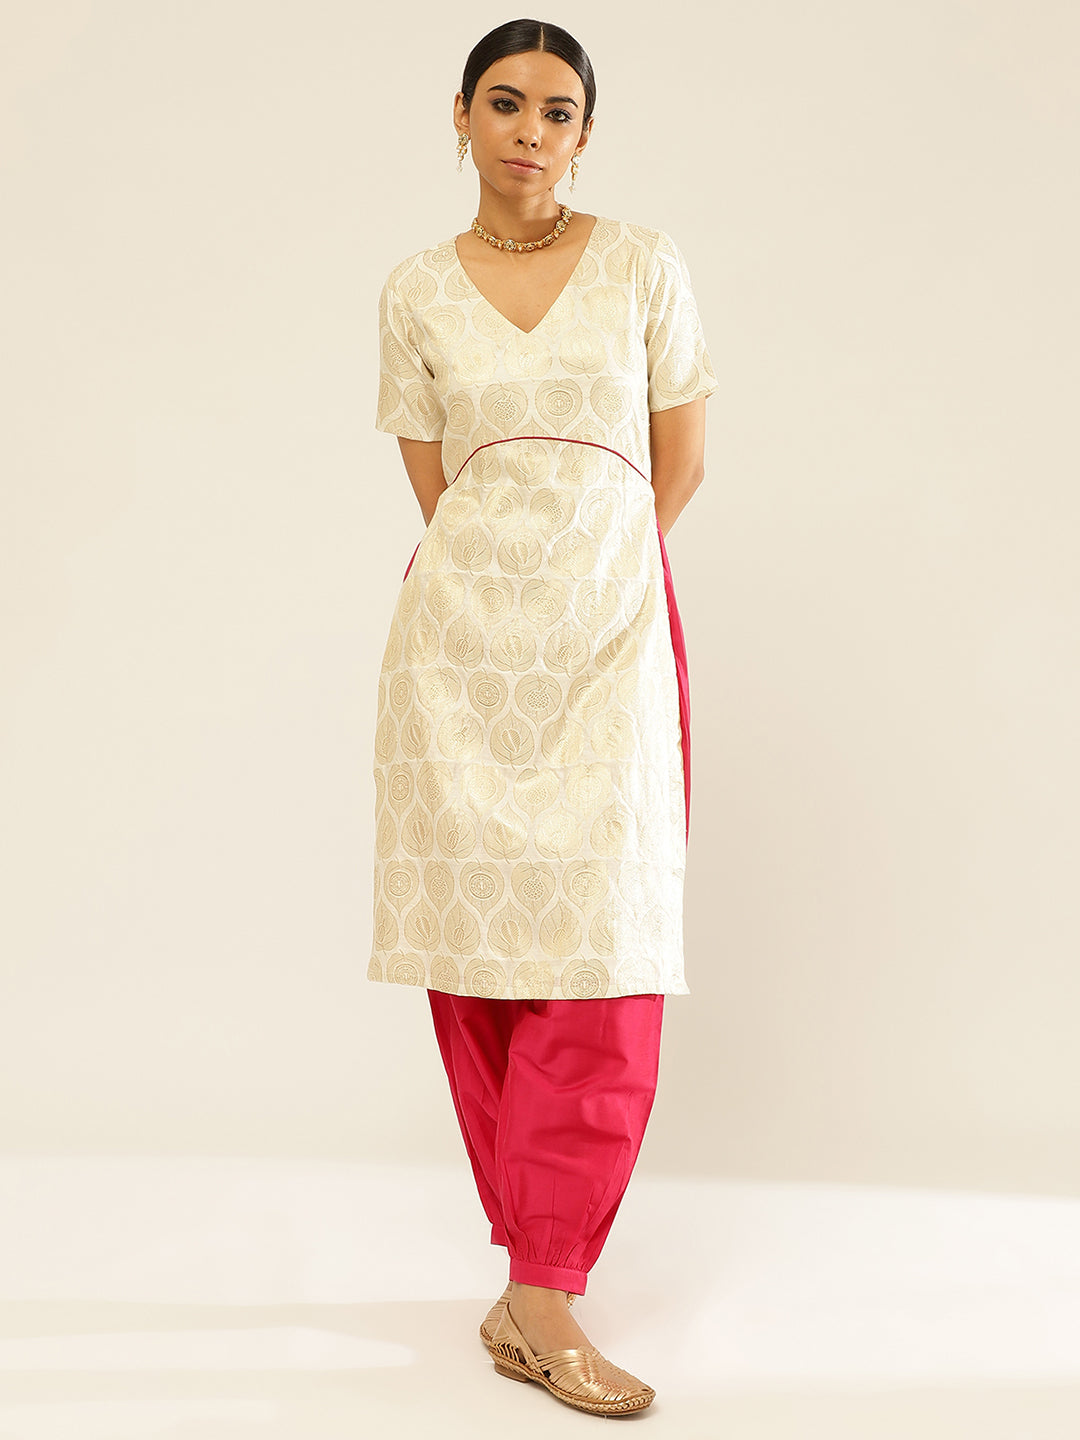 Banarasi zari kurta with U-waistline paired with pathani pants